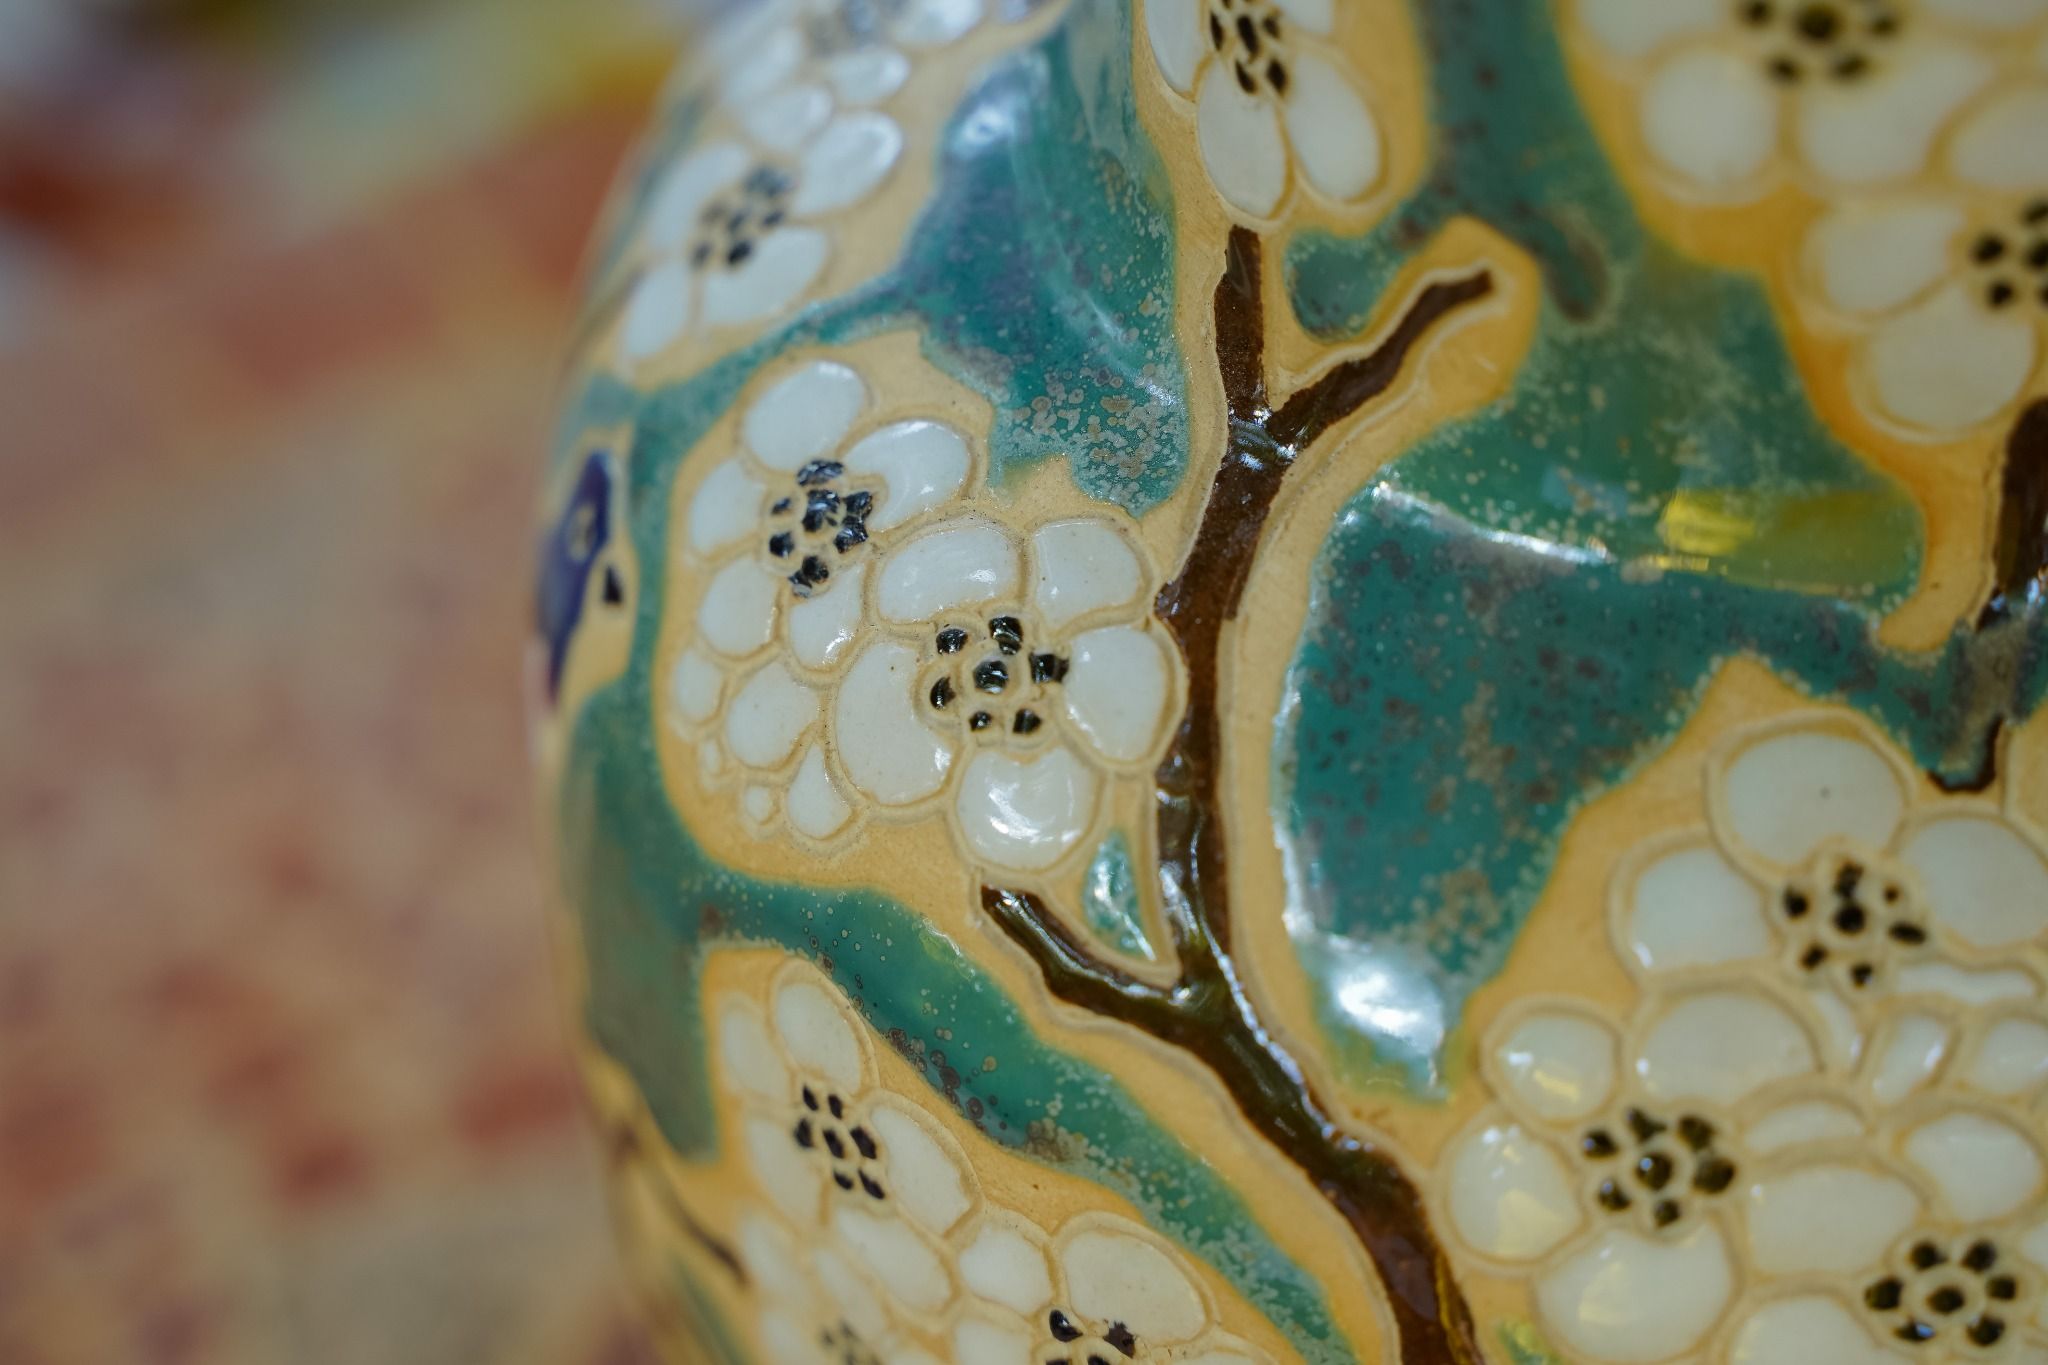  Bình khắc thủ công hoạ tiết Mai Điểu, hoa mai trắng, gốm mỹ nghệ Nam Bộ, H36 cm 